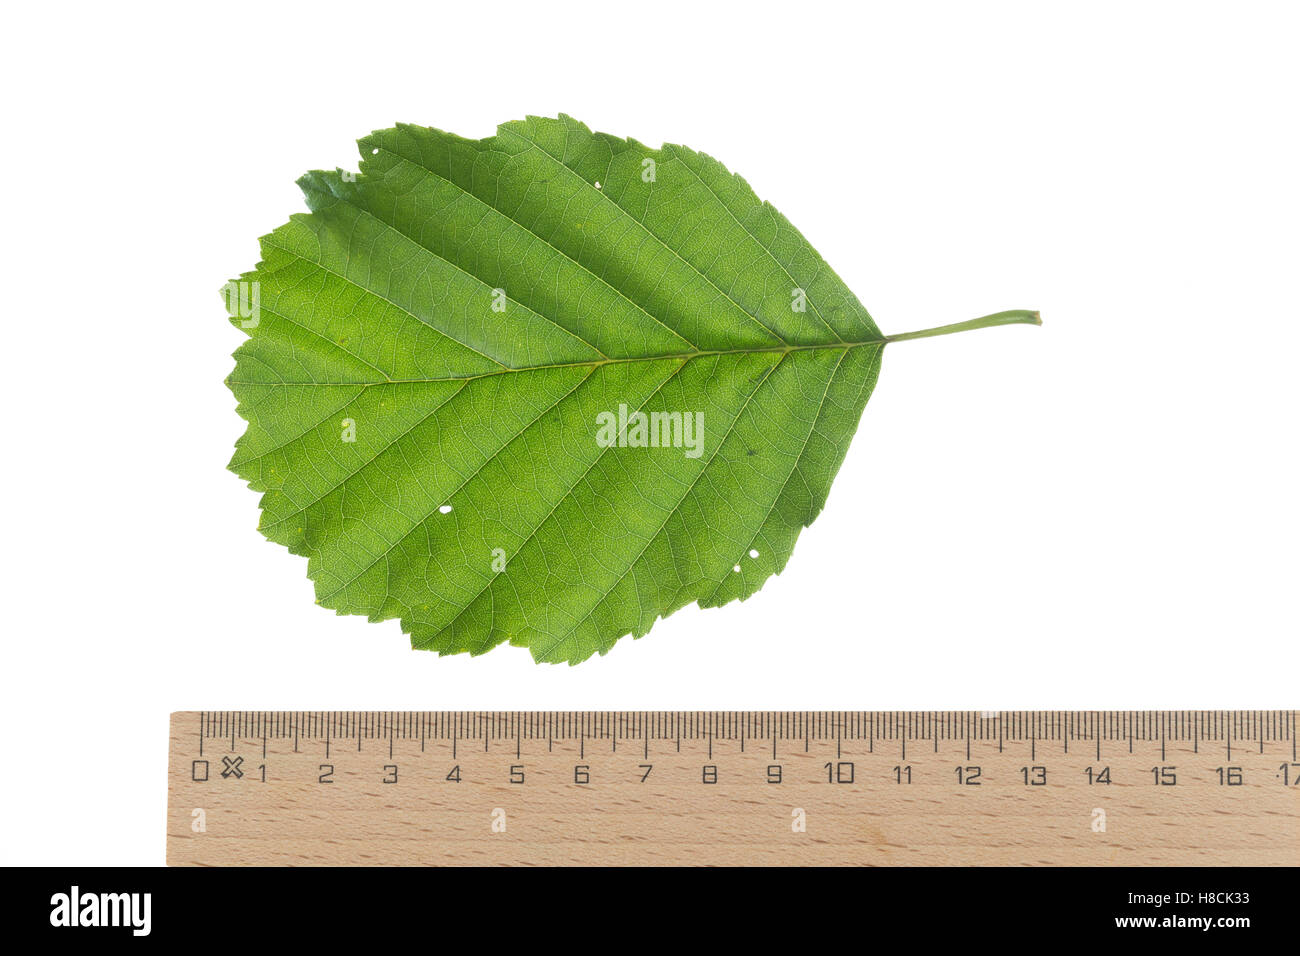 Schwarz-Erle, Schwarzerle, Erle, Alnus glutinosa, Common Alder, Aulne glutineux. Blatt, Blätter, leaf, leaves Stock Photo